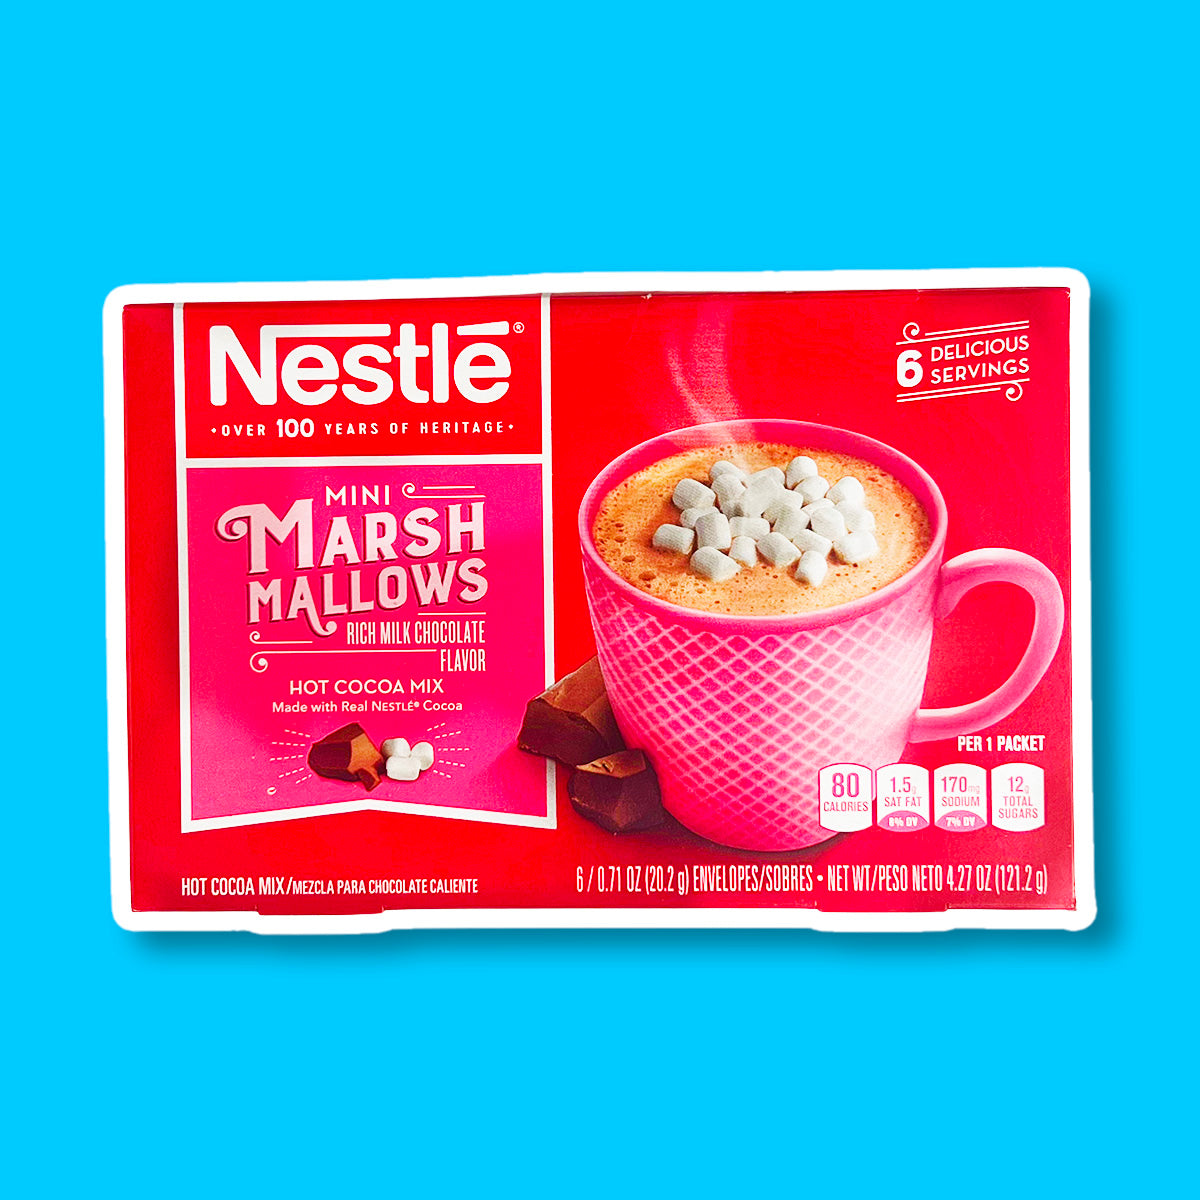 Un carton rouge sur fond bleu avec une tasse rose remplie d’une boisson chaude brune avec au-dessus des mini marshmallows. A gauche 2 morceaux de chocolat 